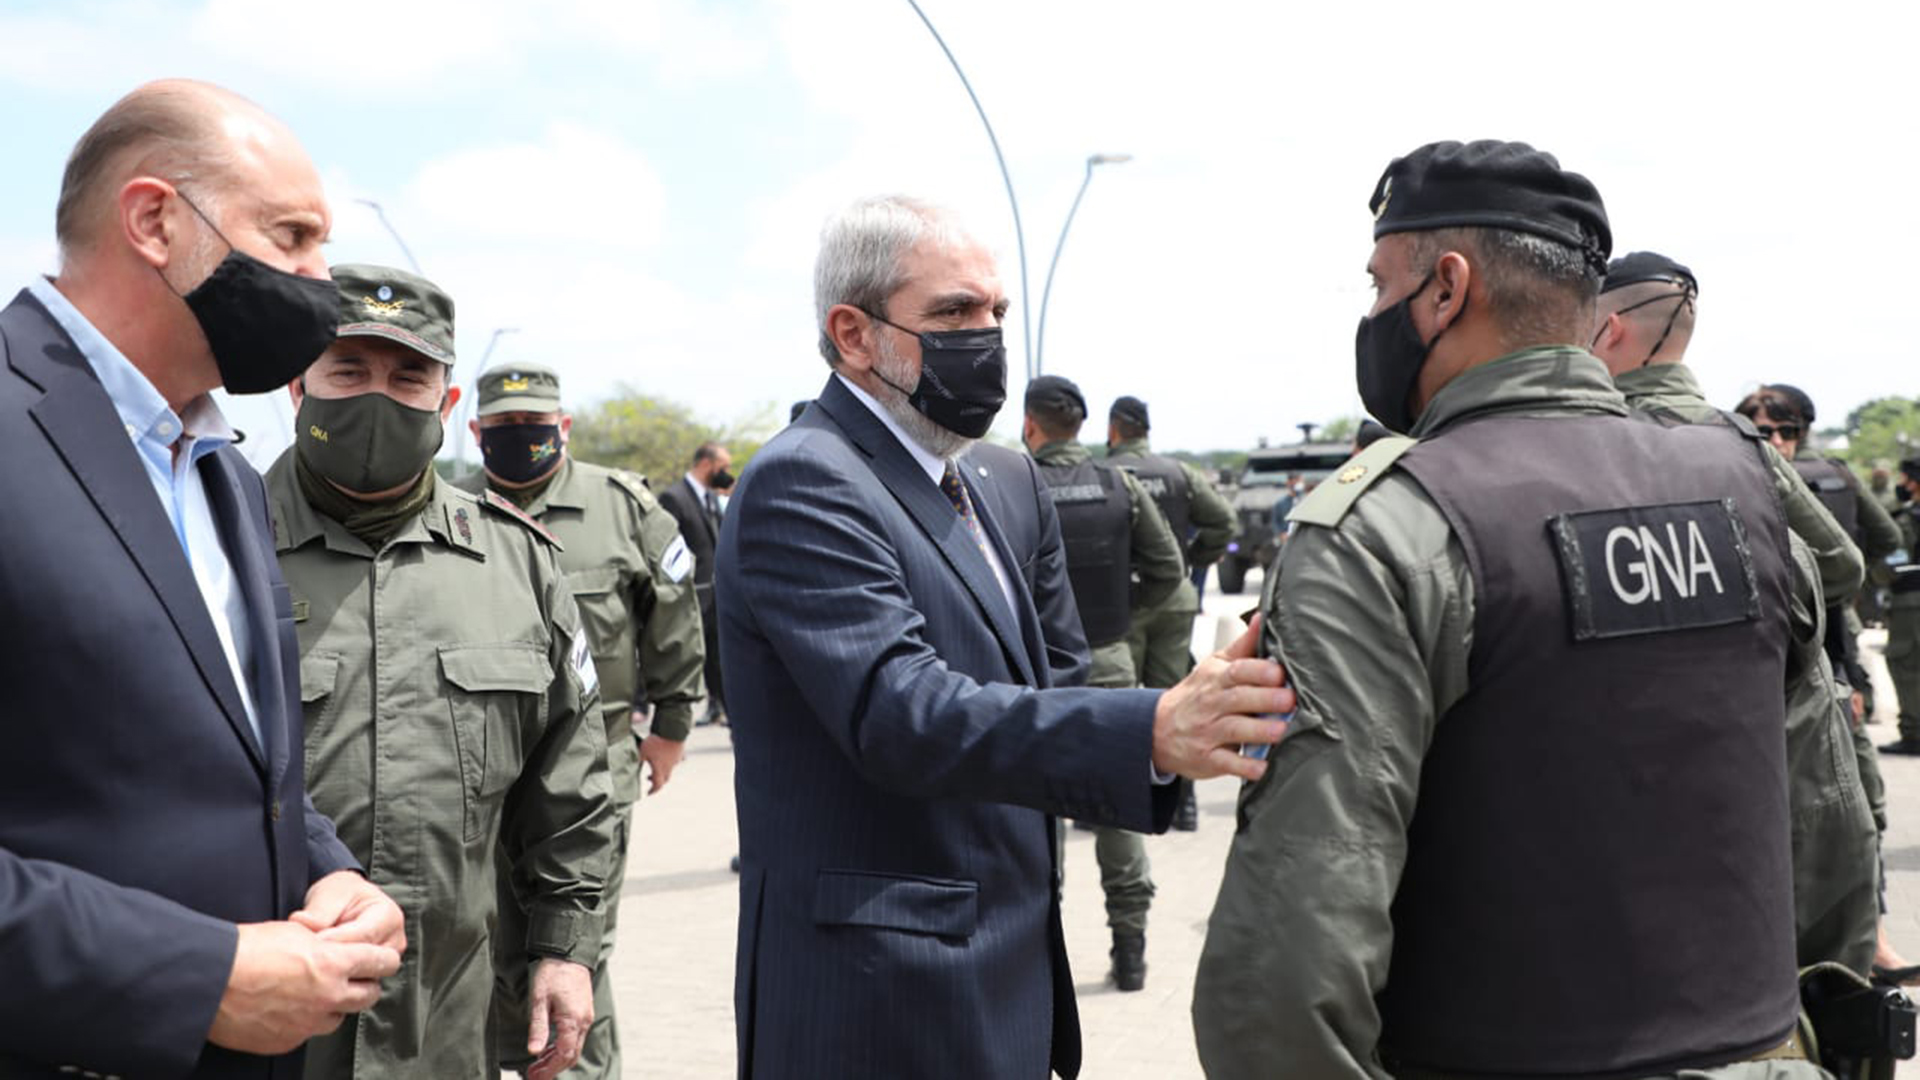 Este miércoles llegarán 400 gendarmes a Rosario y en total habrá 1400 efectivos trabajando en la zona del conflicto narco 